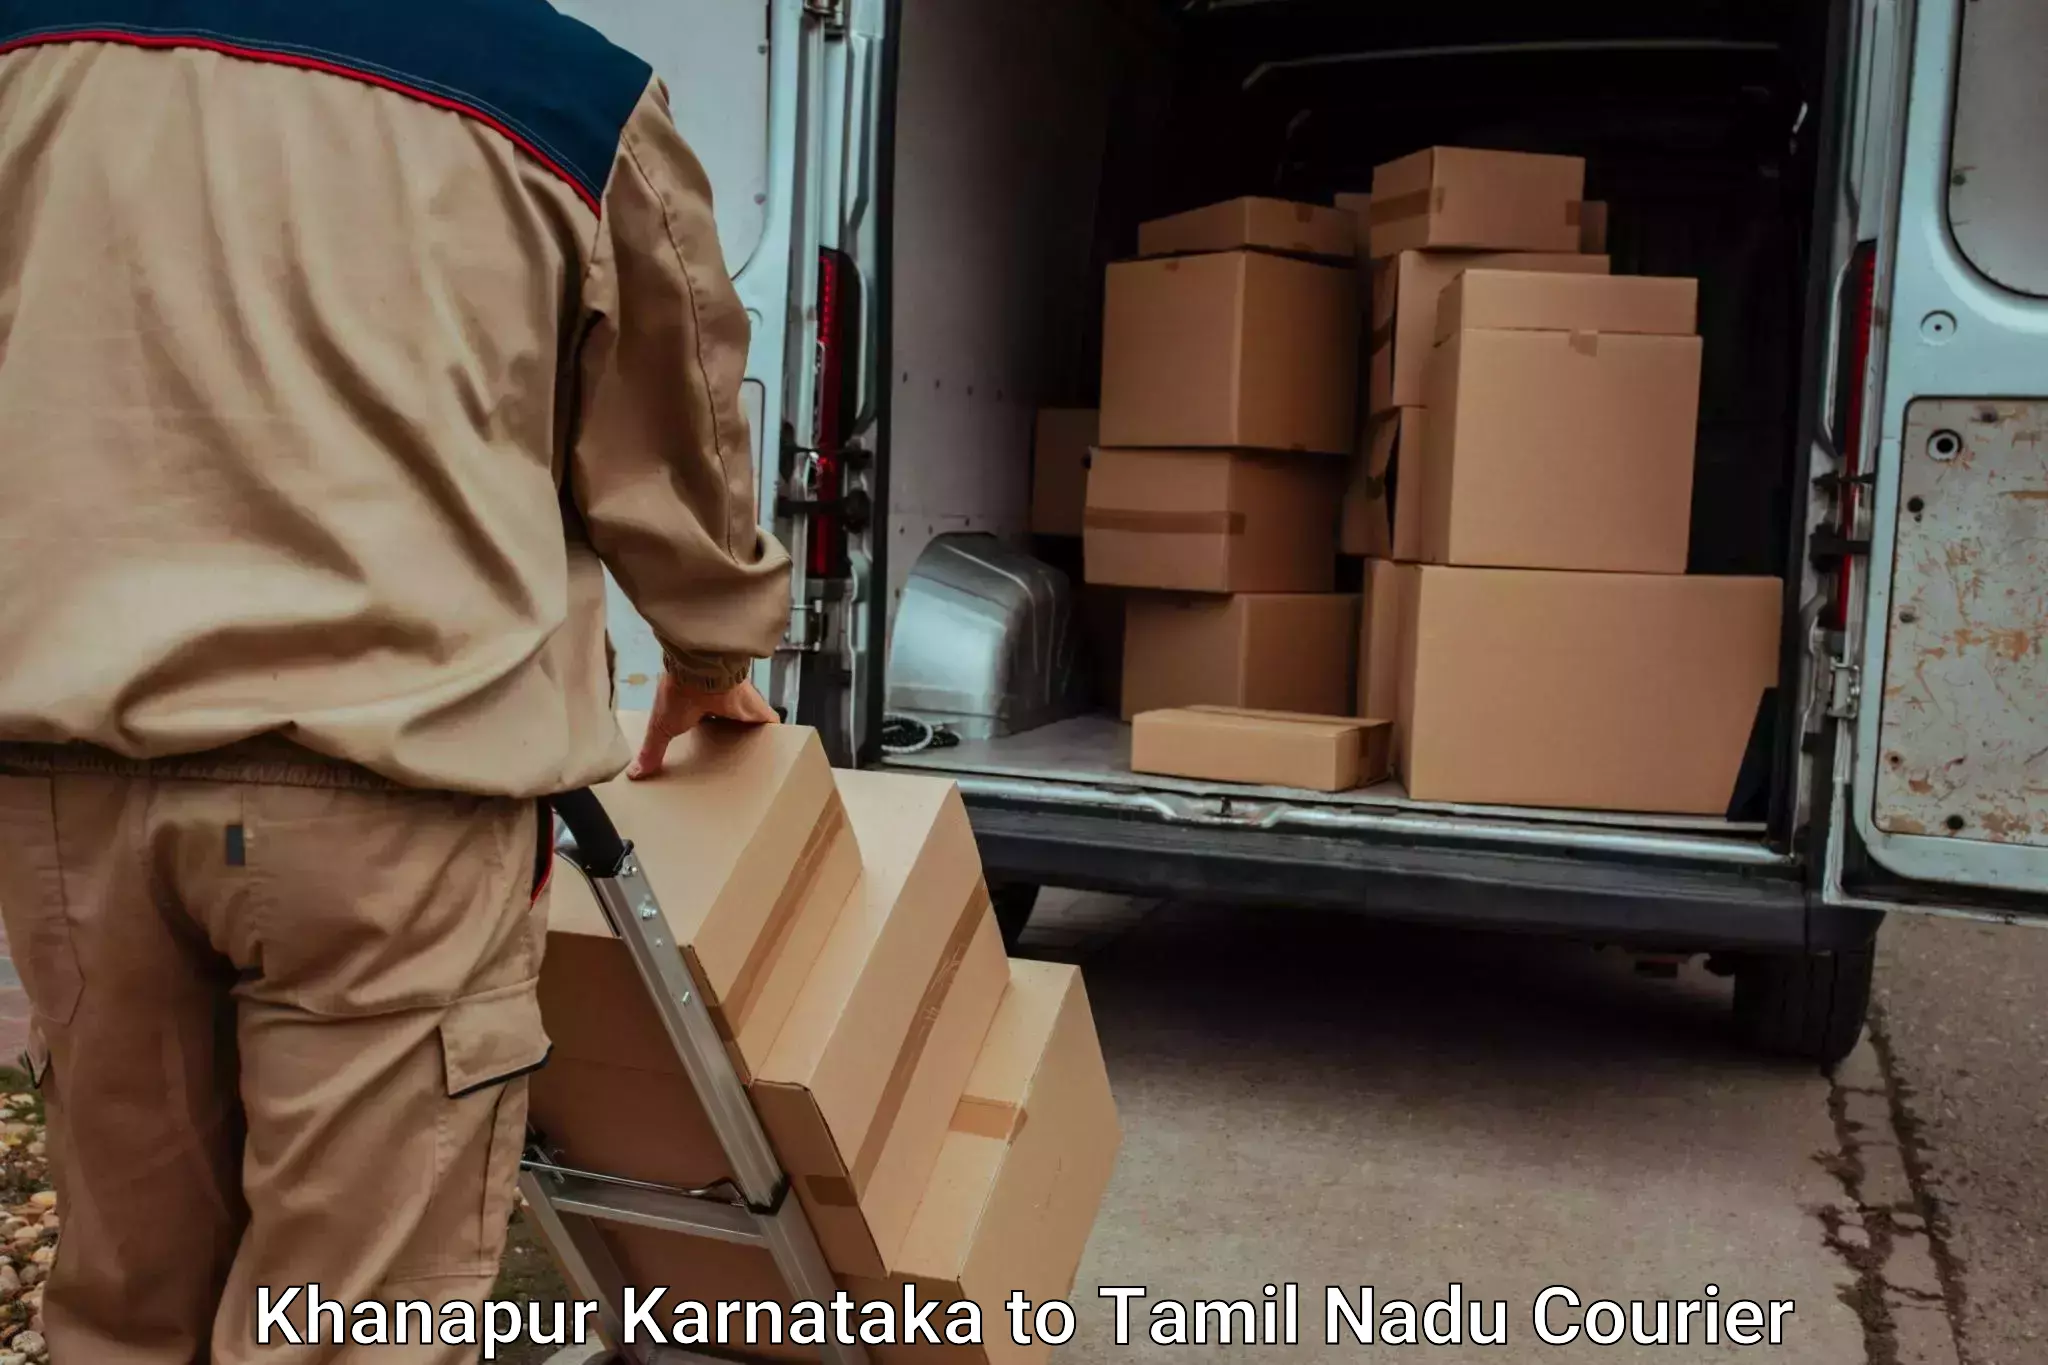 Baggage transport scheduler Khanapur Karnataka to Palacode